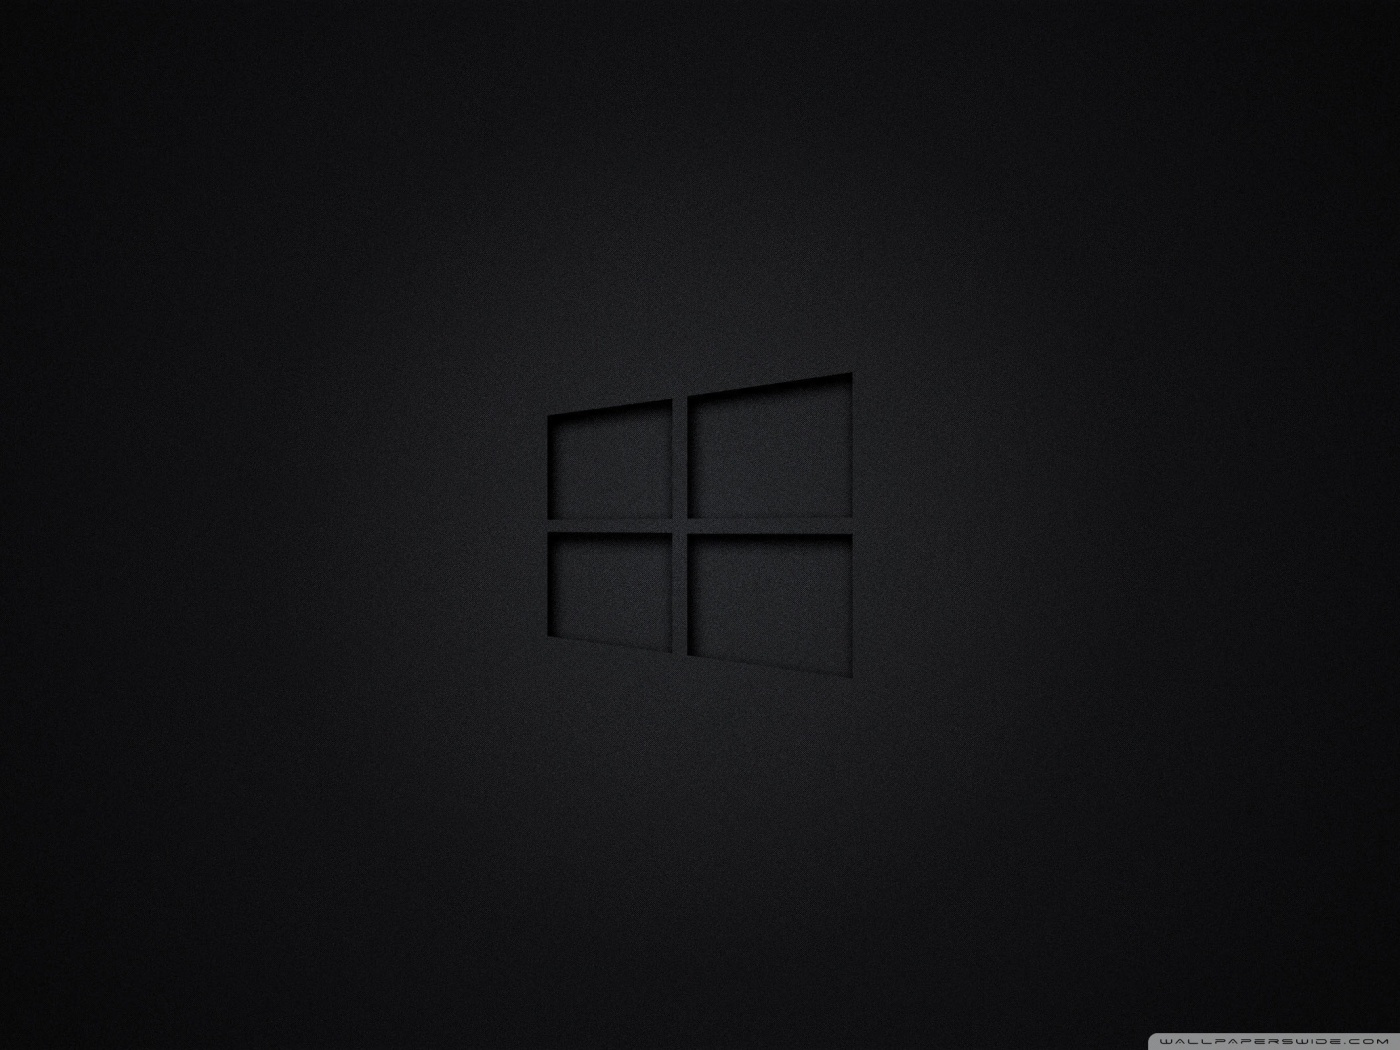 HD wallpaper: Windows 10, Black, 4K, 8K, 10K